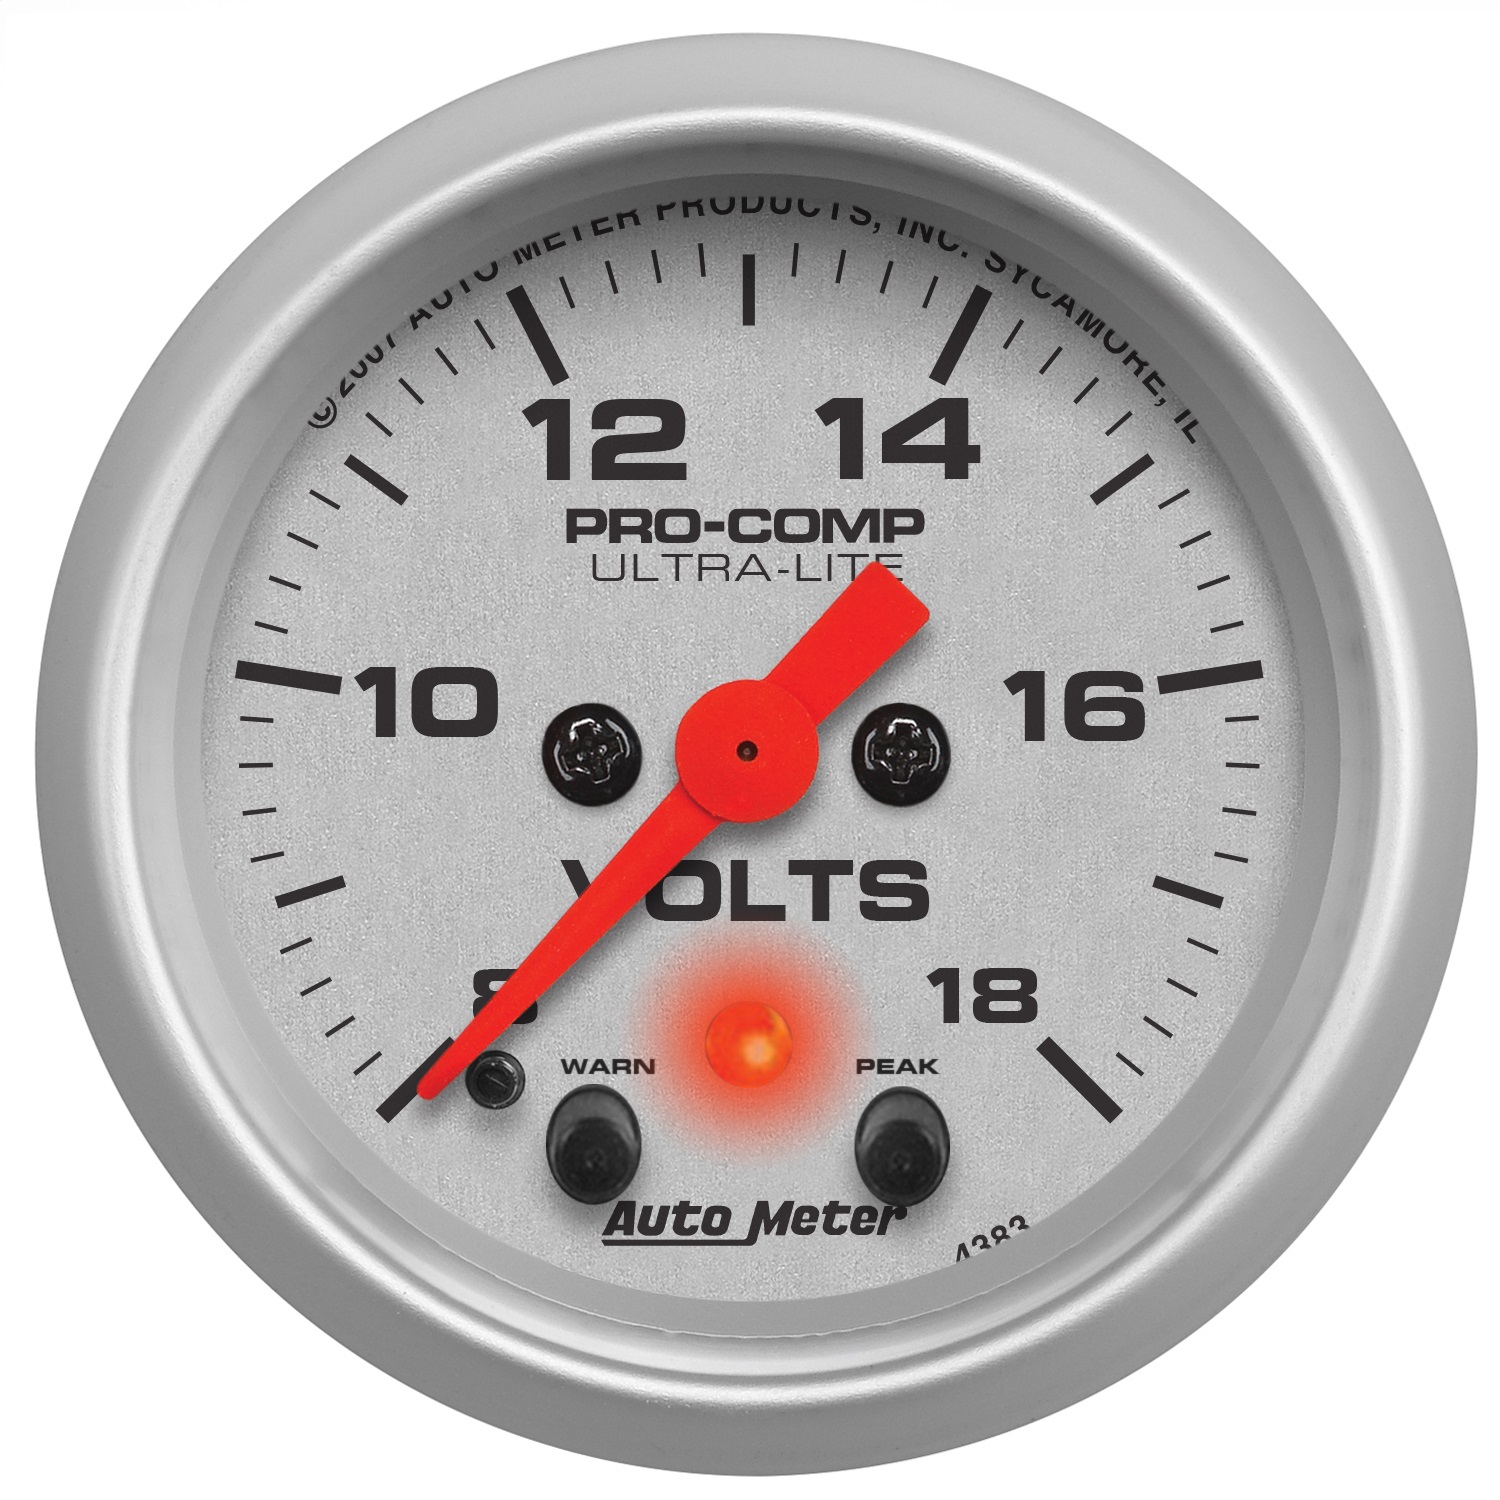 Auto Meter Auto Meter 4383 Ultra-Lite; Electric Voltmeter Gauge